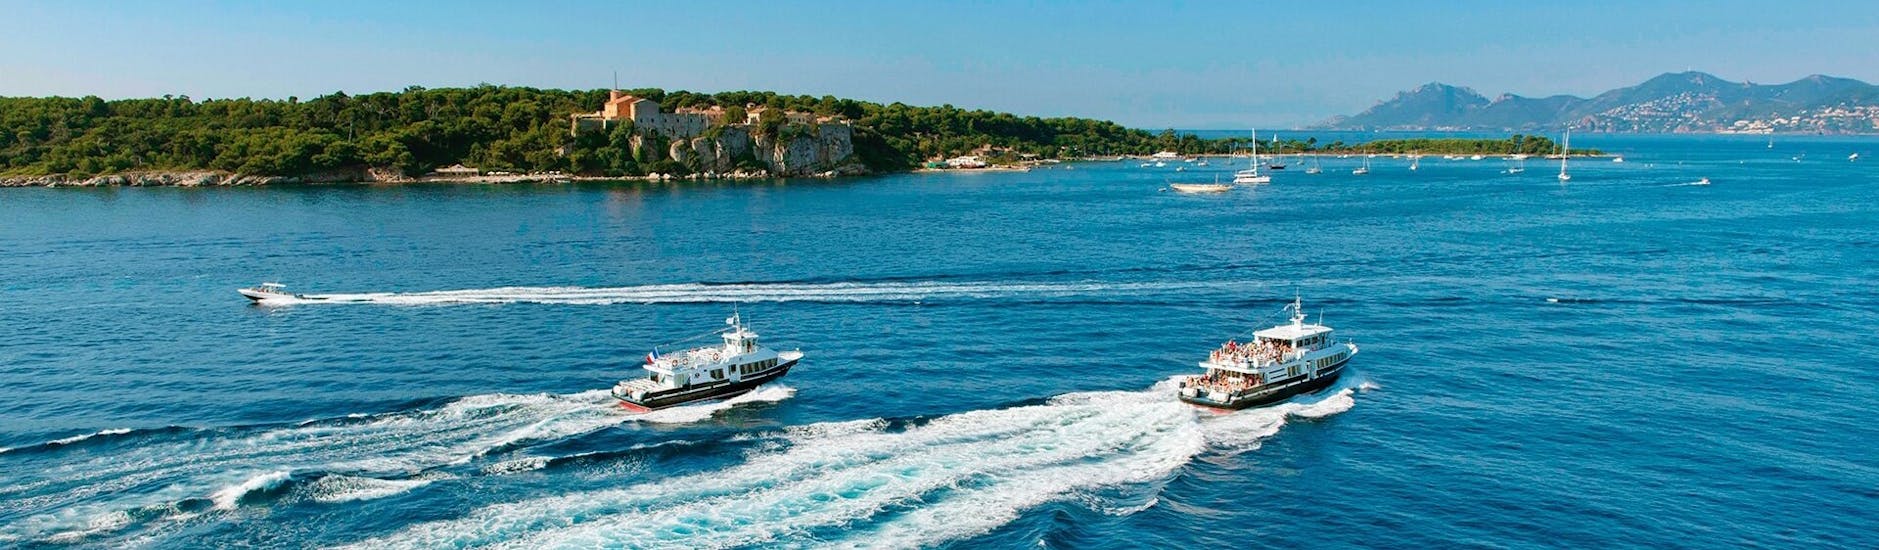 Blick auf die Boote während des Bootstransfers von Cannes zur Insel Sainte-Marguerite mit Trans Côte d'Azur.